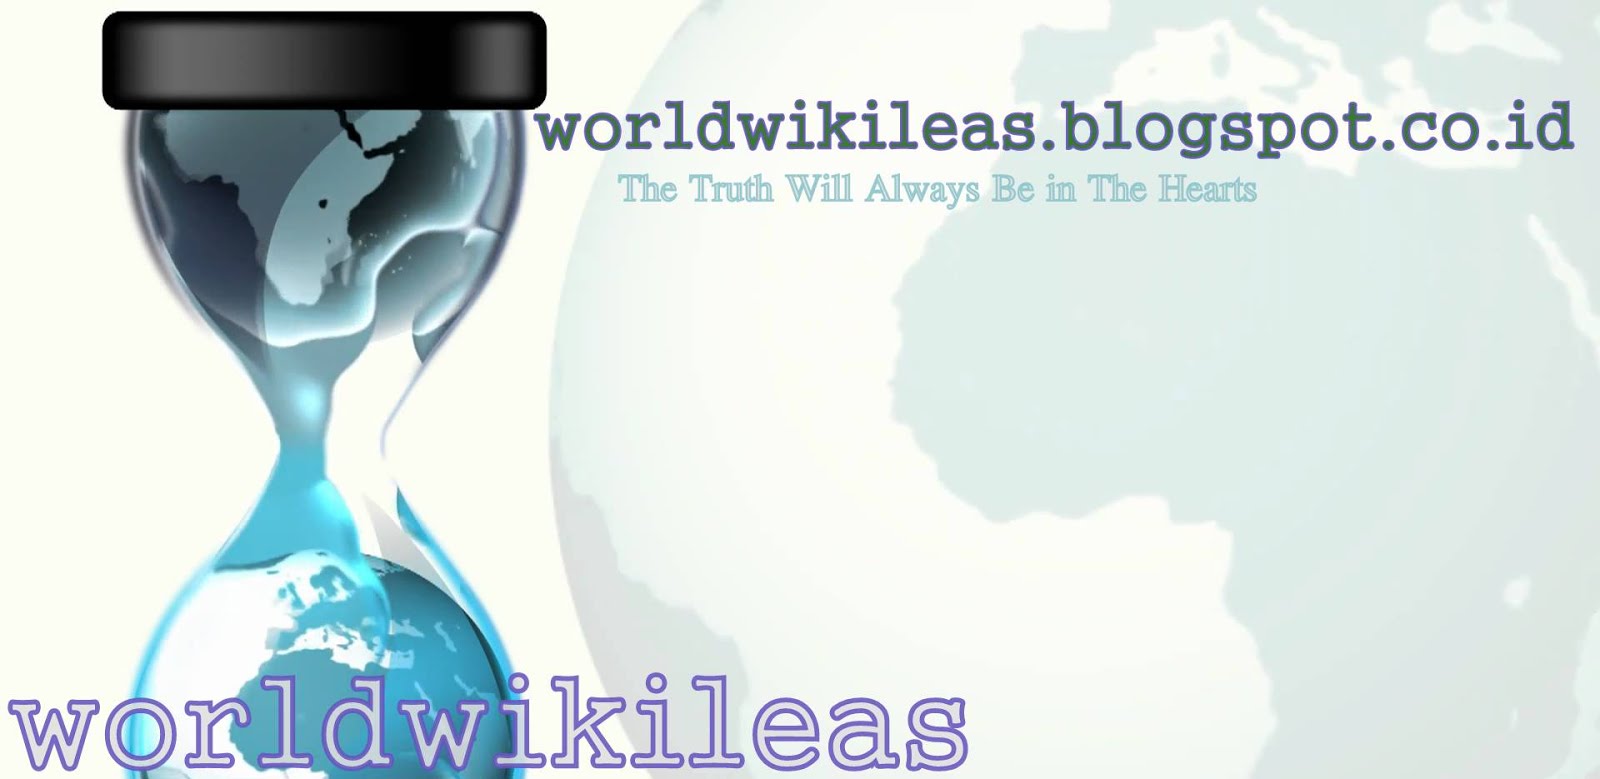 worldwikileas.blogspot.co.id